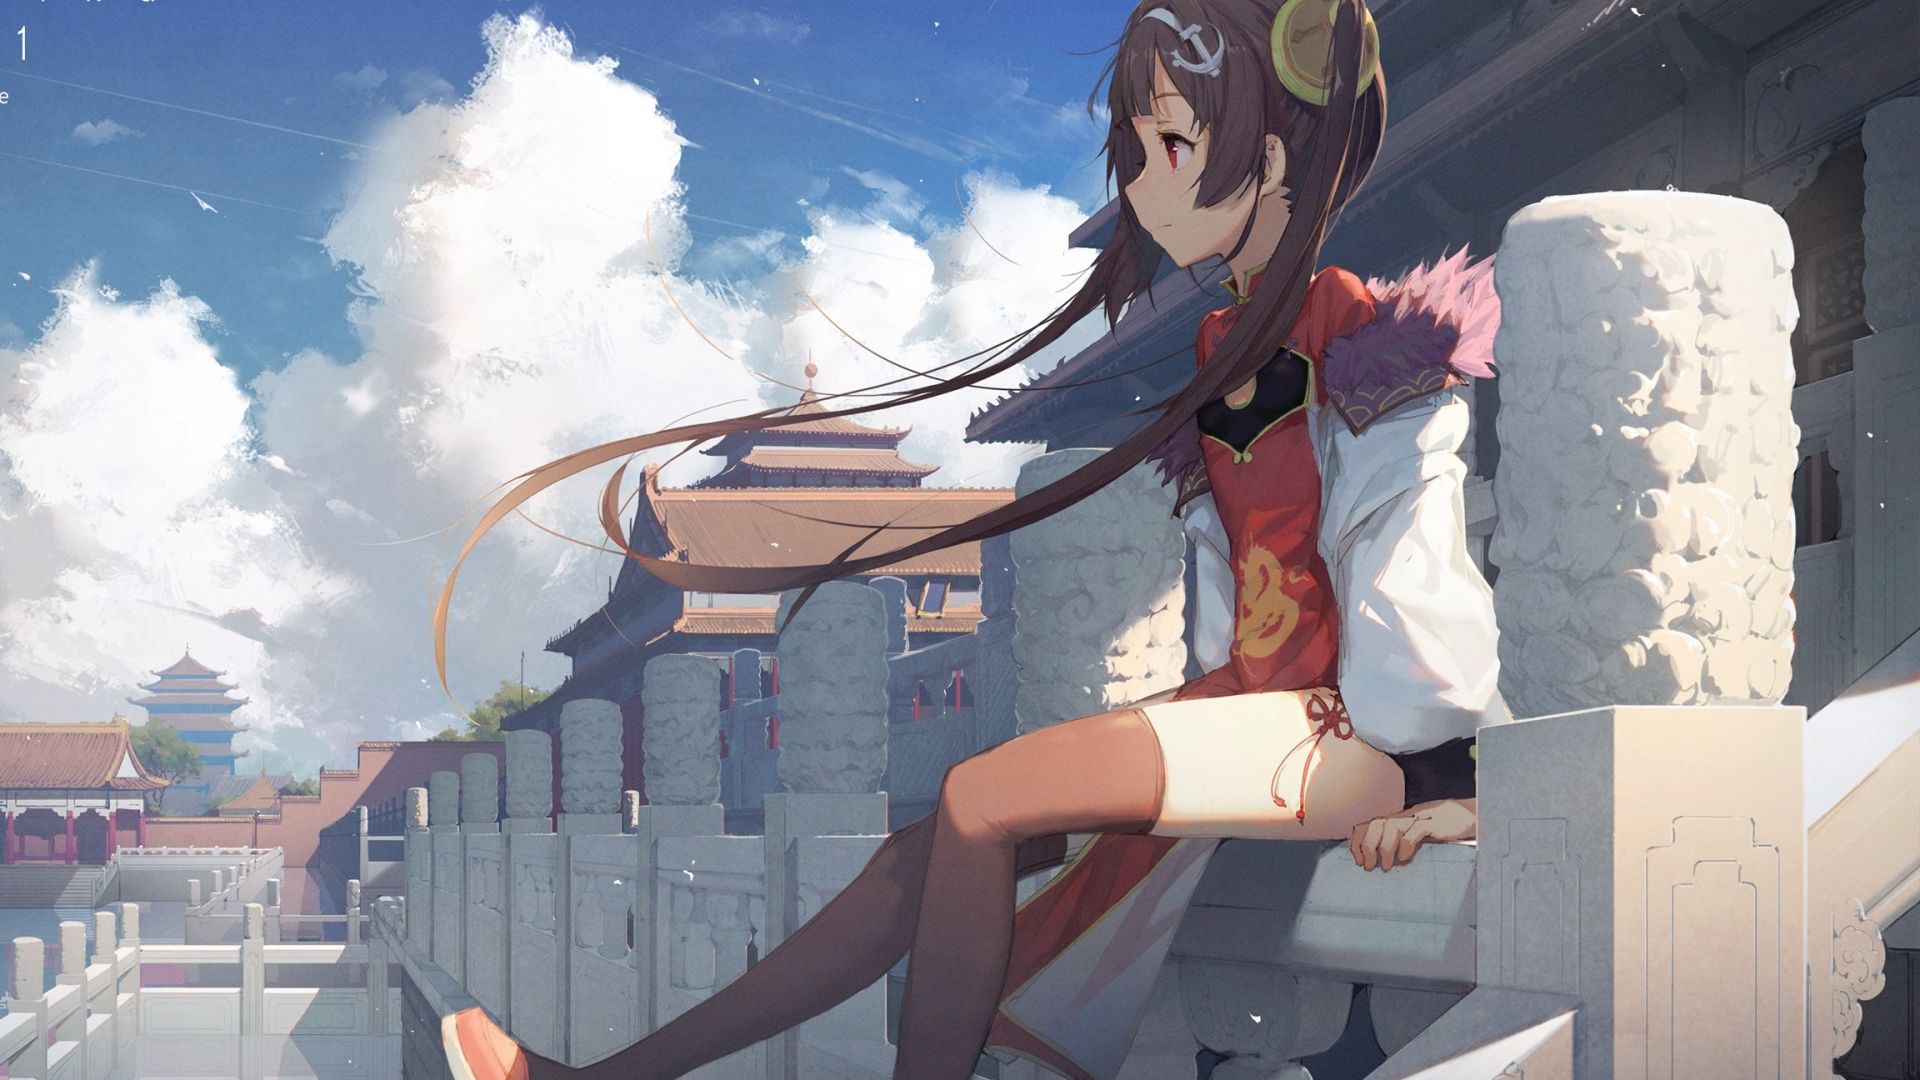 Wallpaper Azur lane, anime girl, outdoor